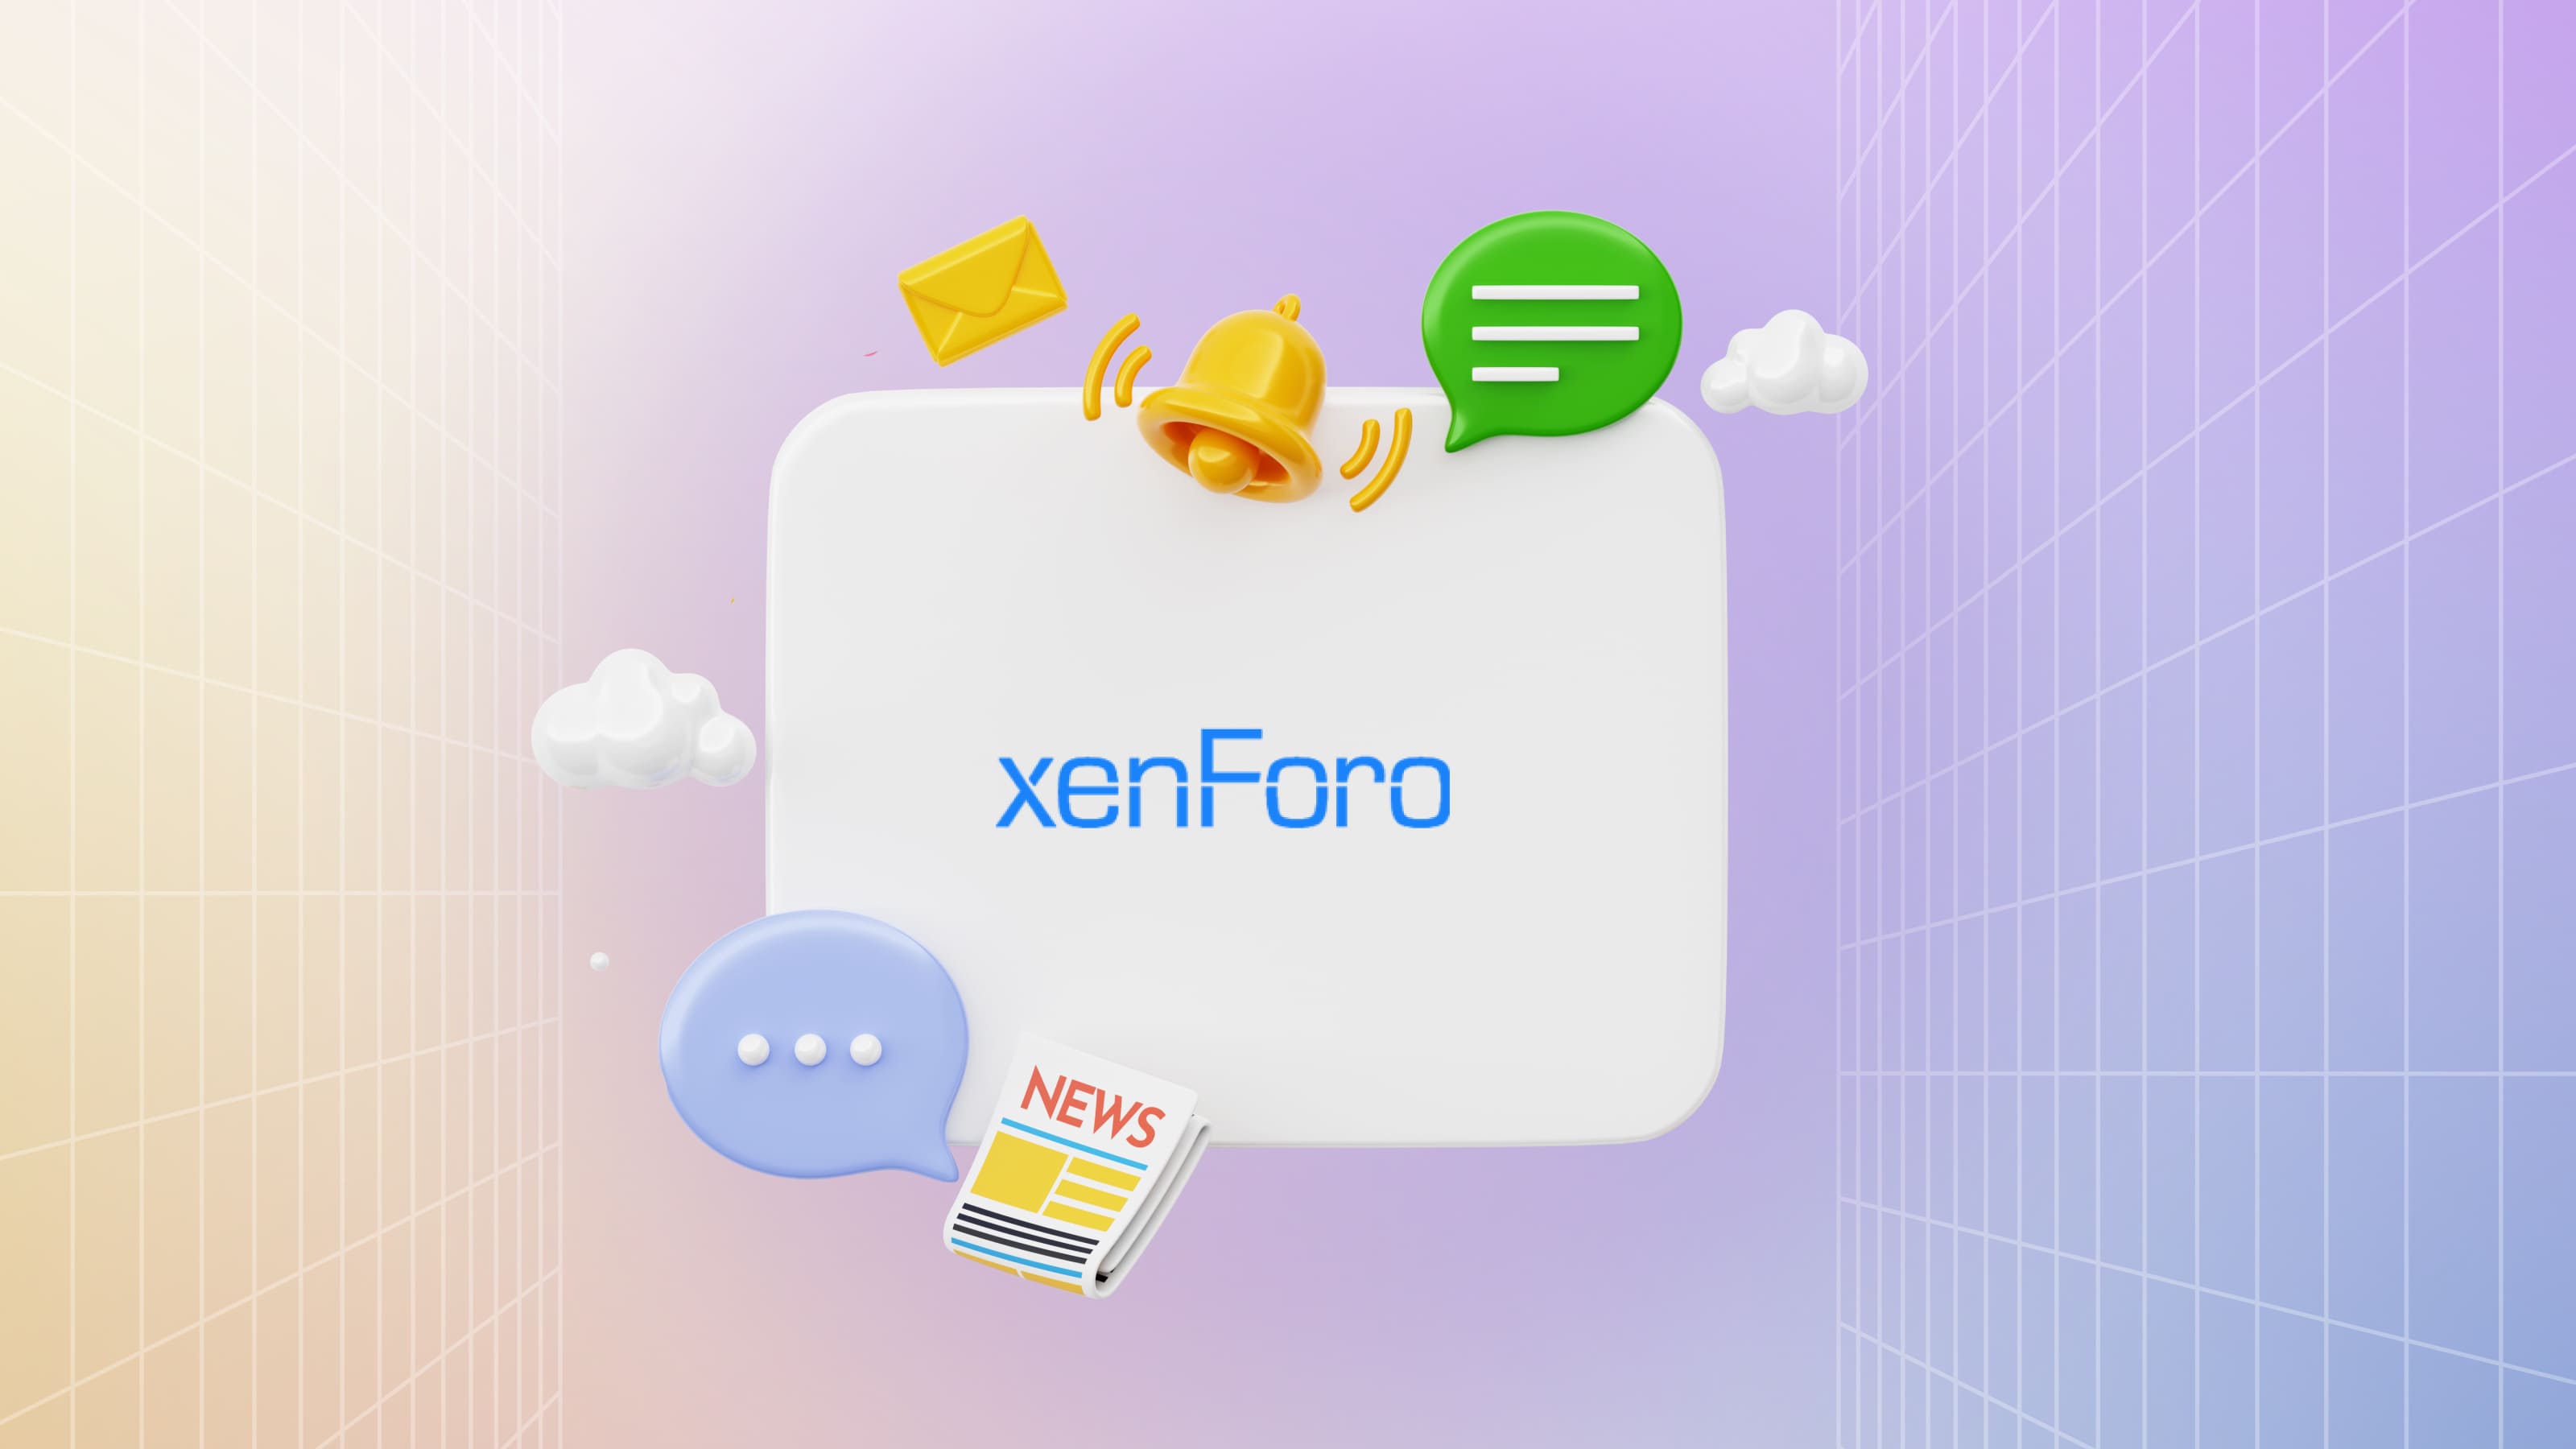 XenForo предоставляет множество возможностей для ведения веб-форумов — от модерации до SEO-оптимизации.